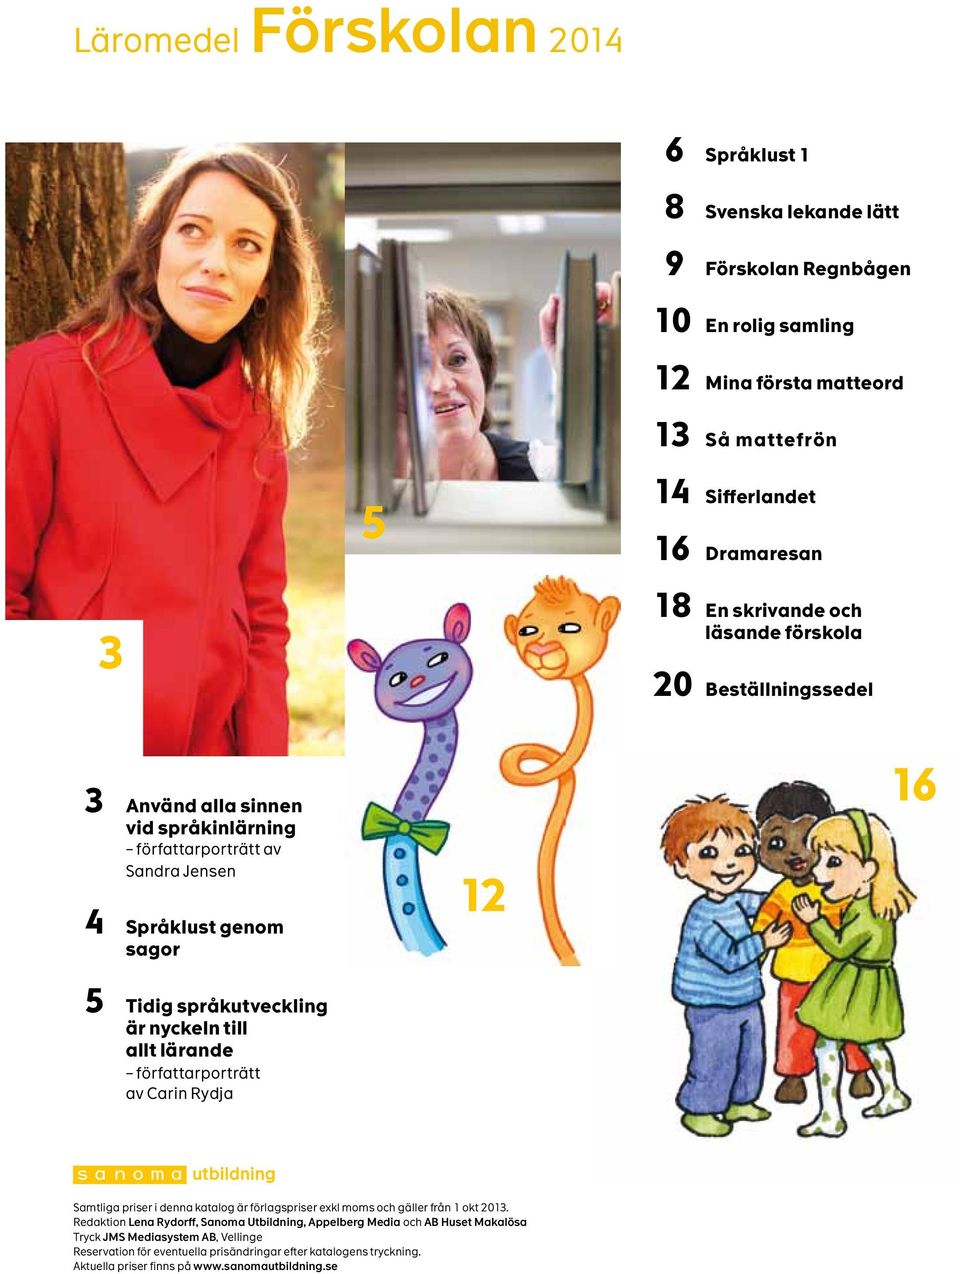 nyckeln till llt lärnde förfttrporträtt v Crin Rydj Smtlig priser i denn ktlog är förlgspriser exkl moms och gäller från 1 okt 2013.